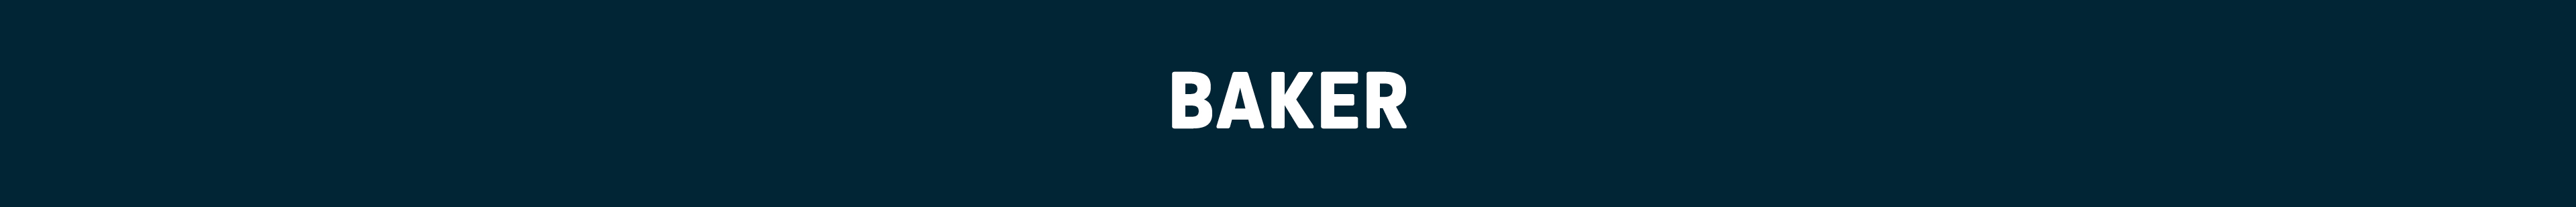 Baker.jpg